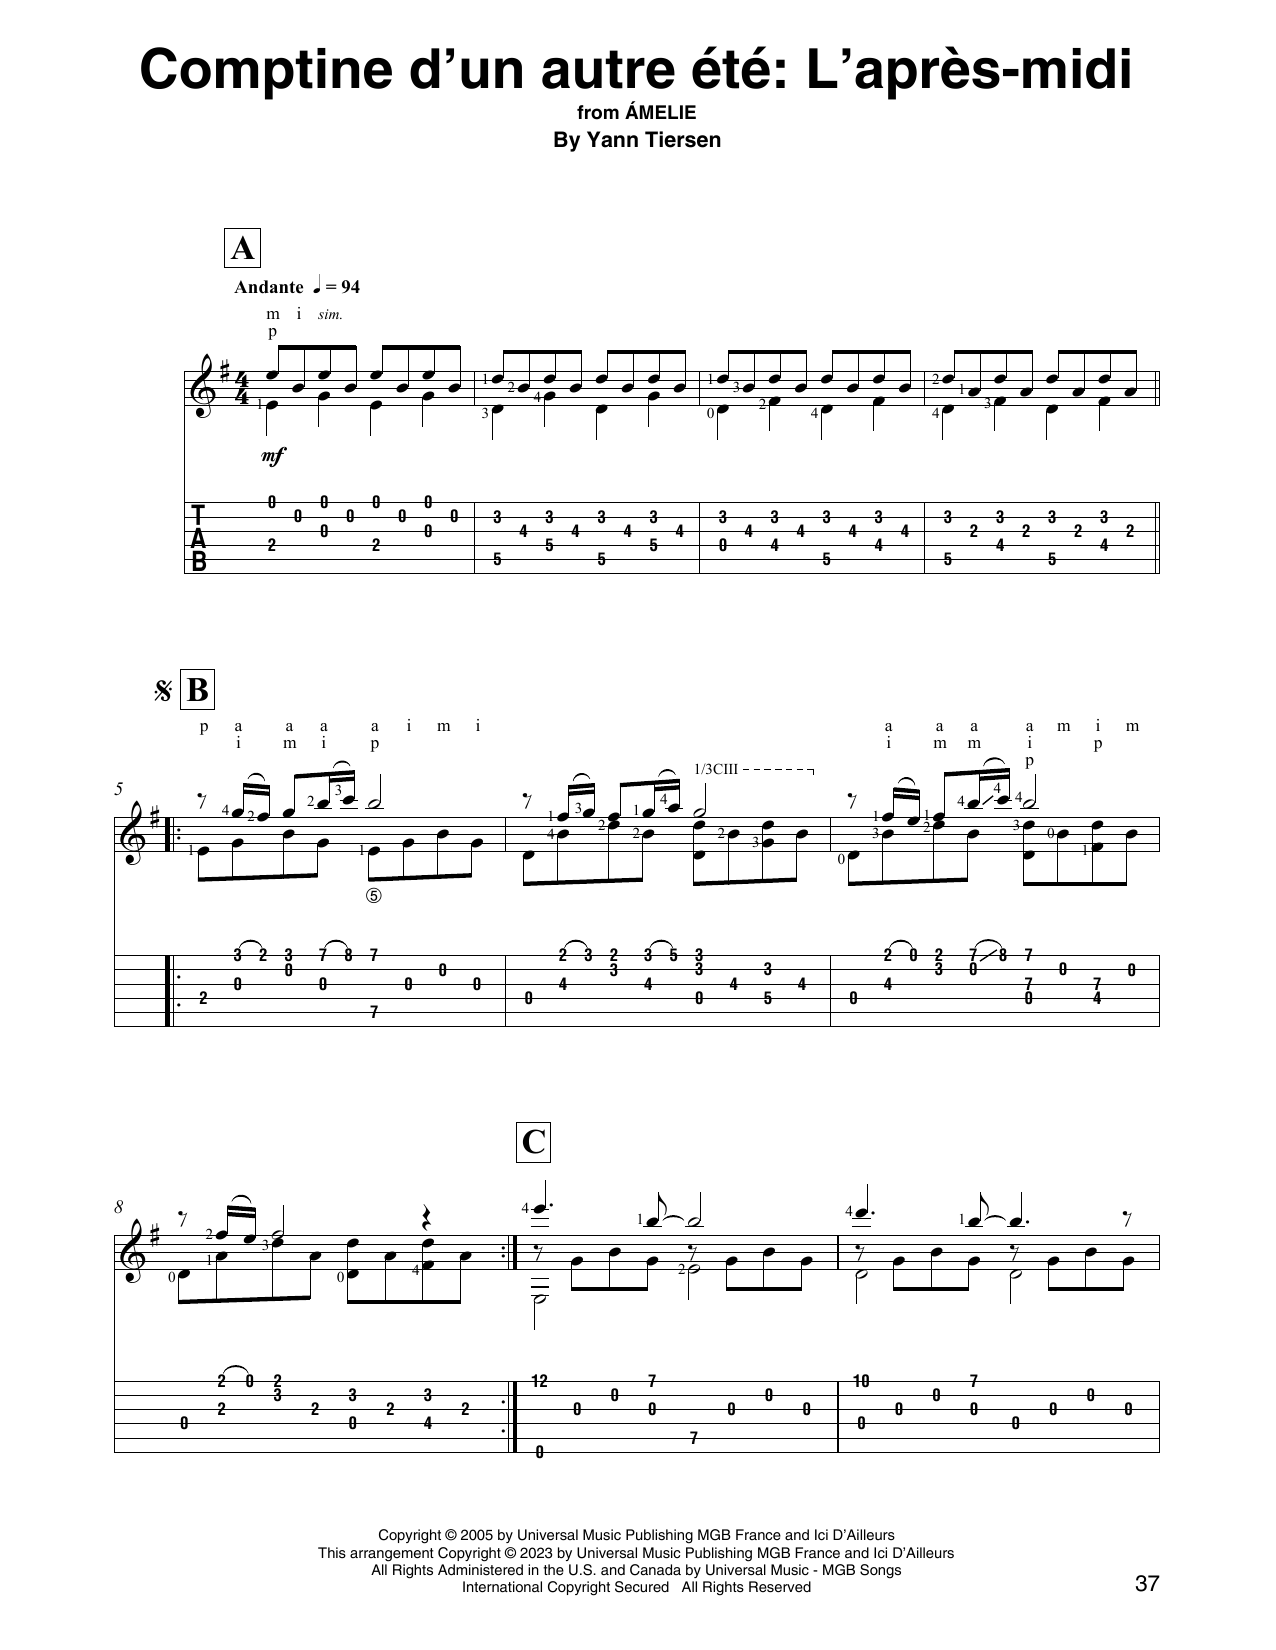 Download Yann Tiersen Comptine d'un autre été: L'après-midi (from Amelie) Sheet Music and learn how to play Solo Guitar PDF digital score in minutes